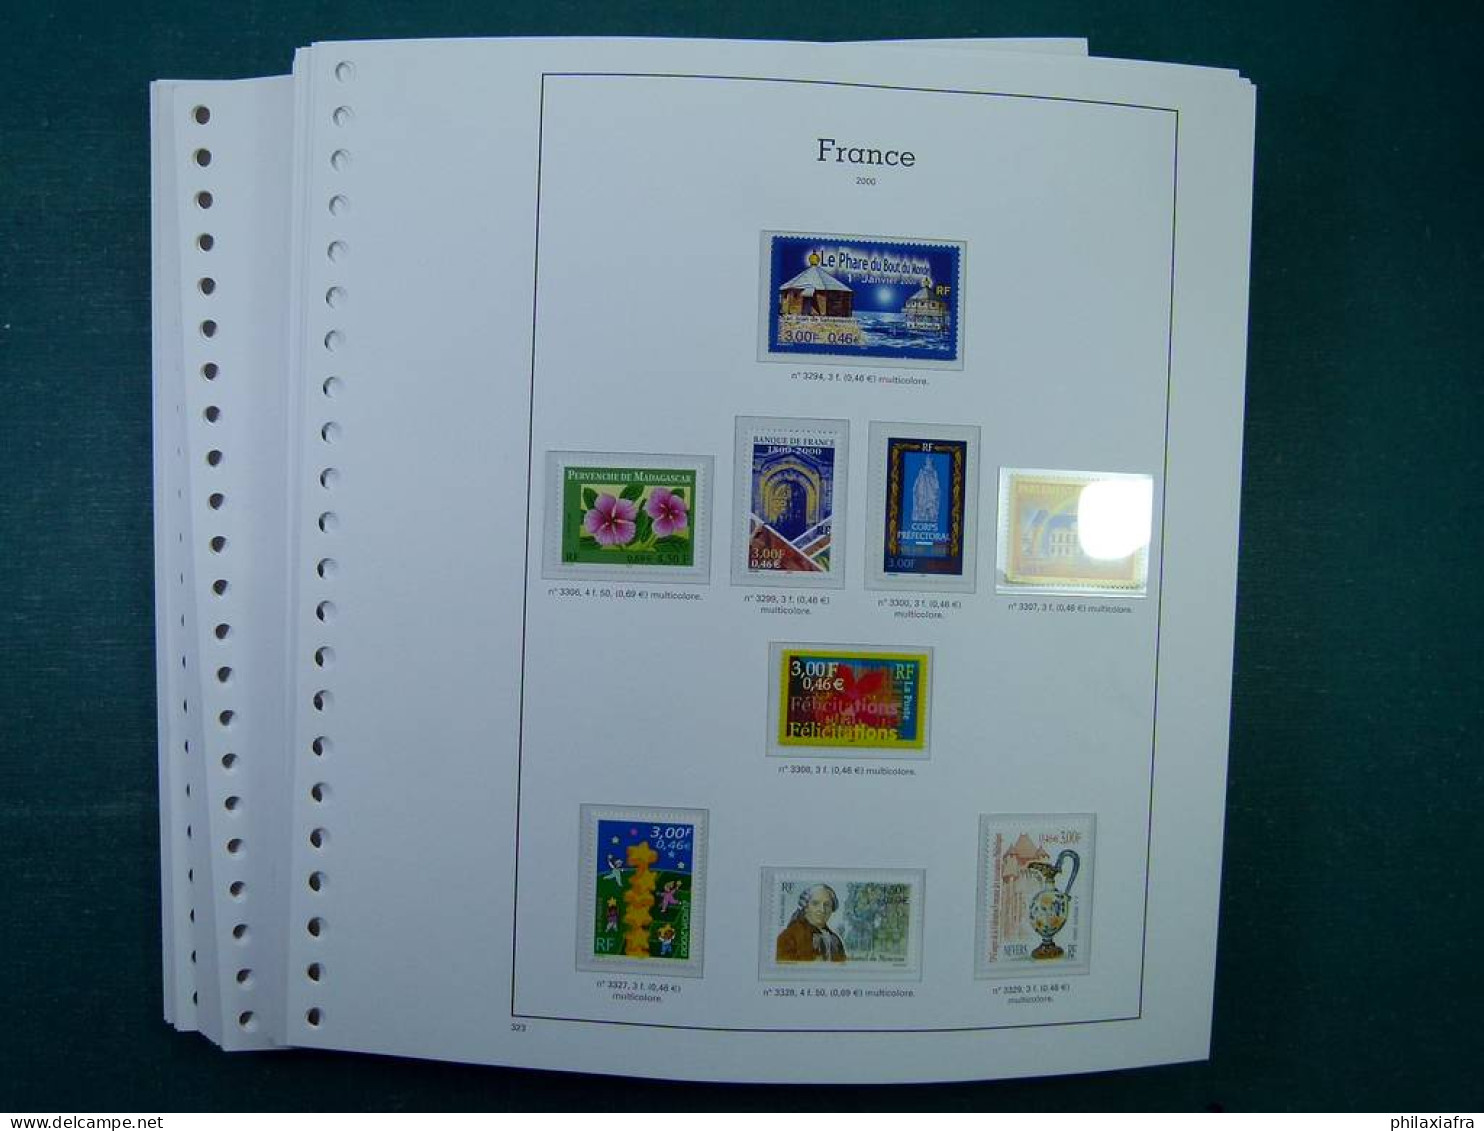 Collection France, Pages D'album, Timbres, Livret BF Neufs ** De 2000 à 2004. - Colecciones Completas